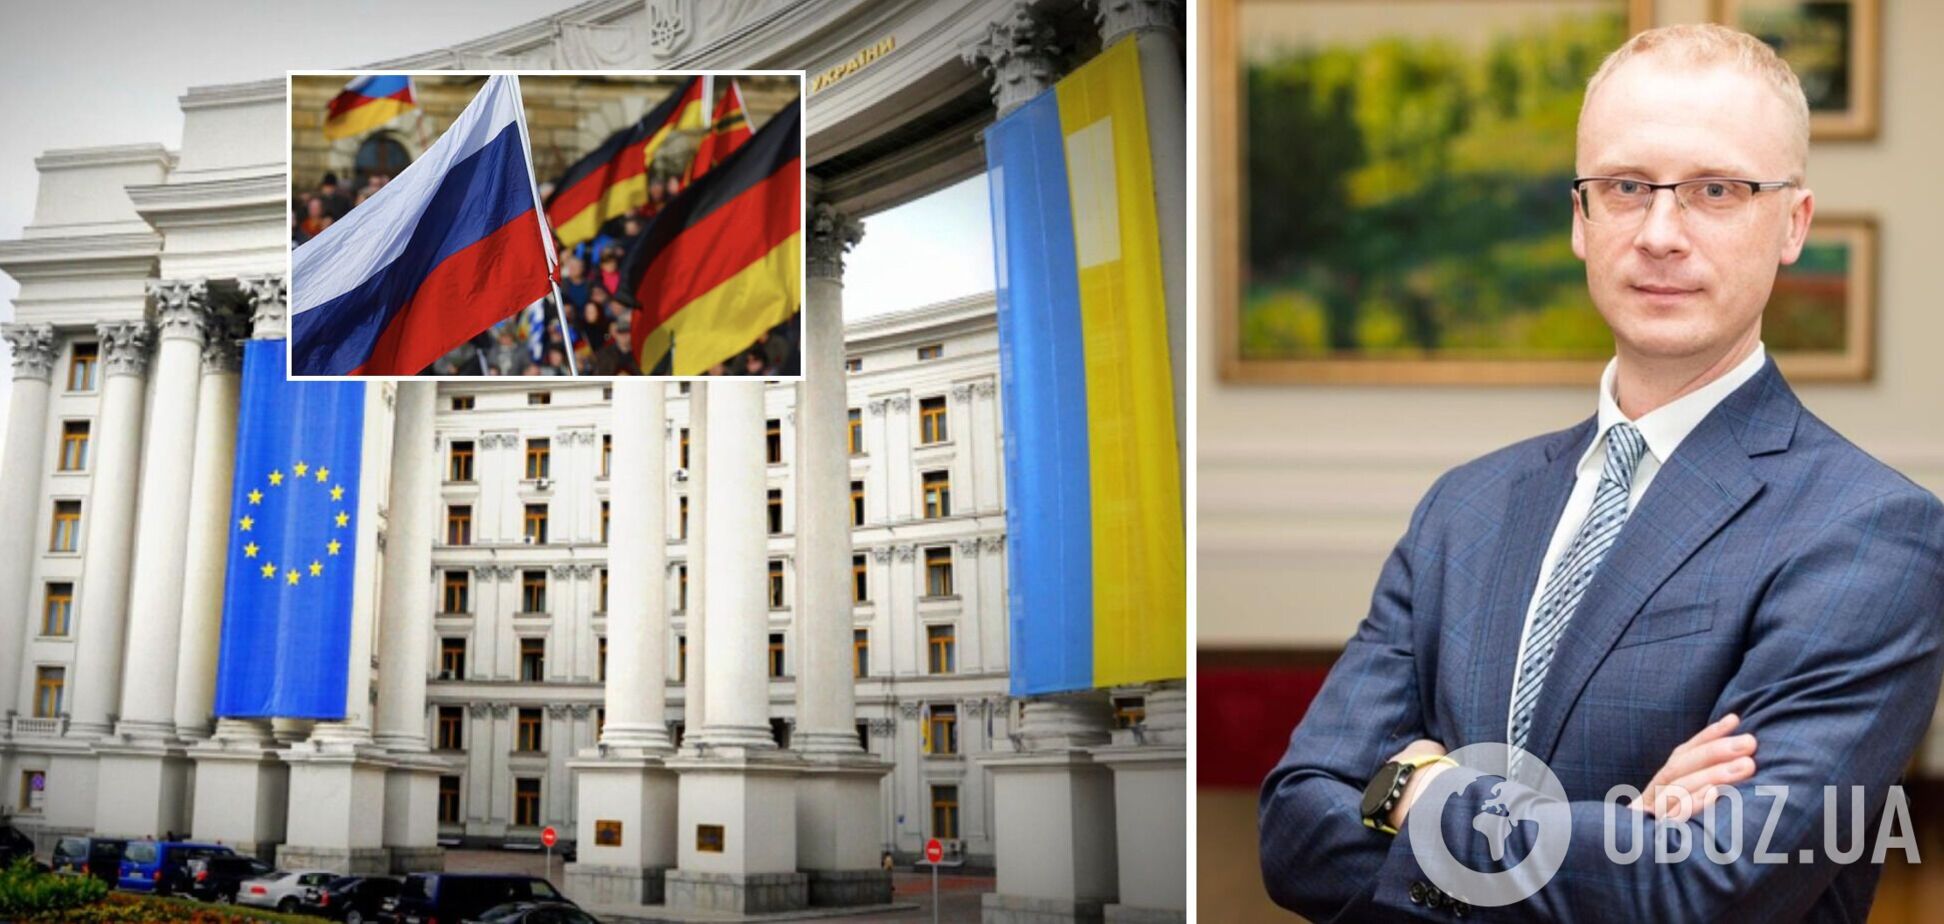 МИД Украины напомнил Германии о 'не вражеских' выходках России: жизни людей важнее денег